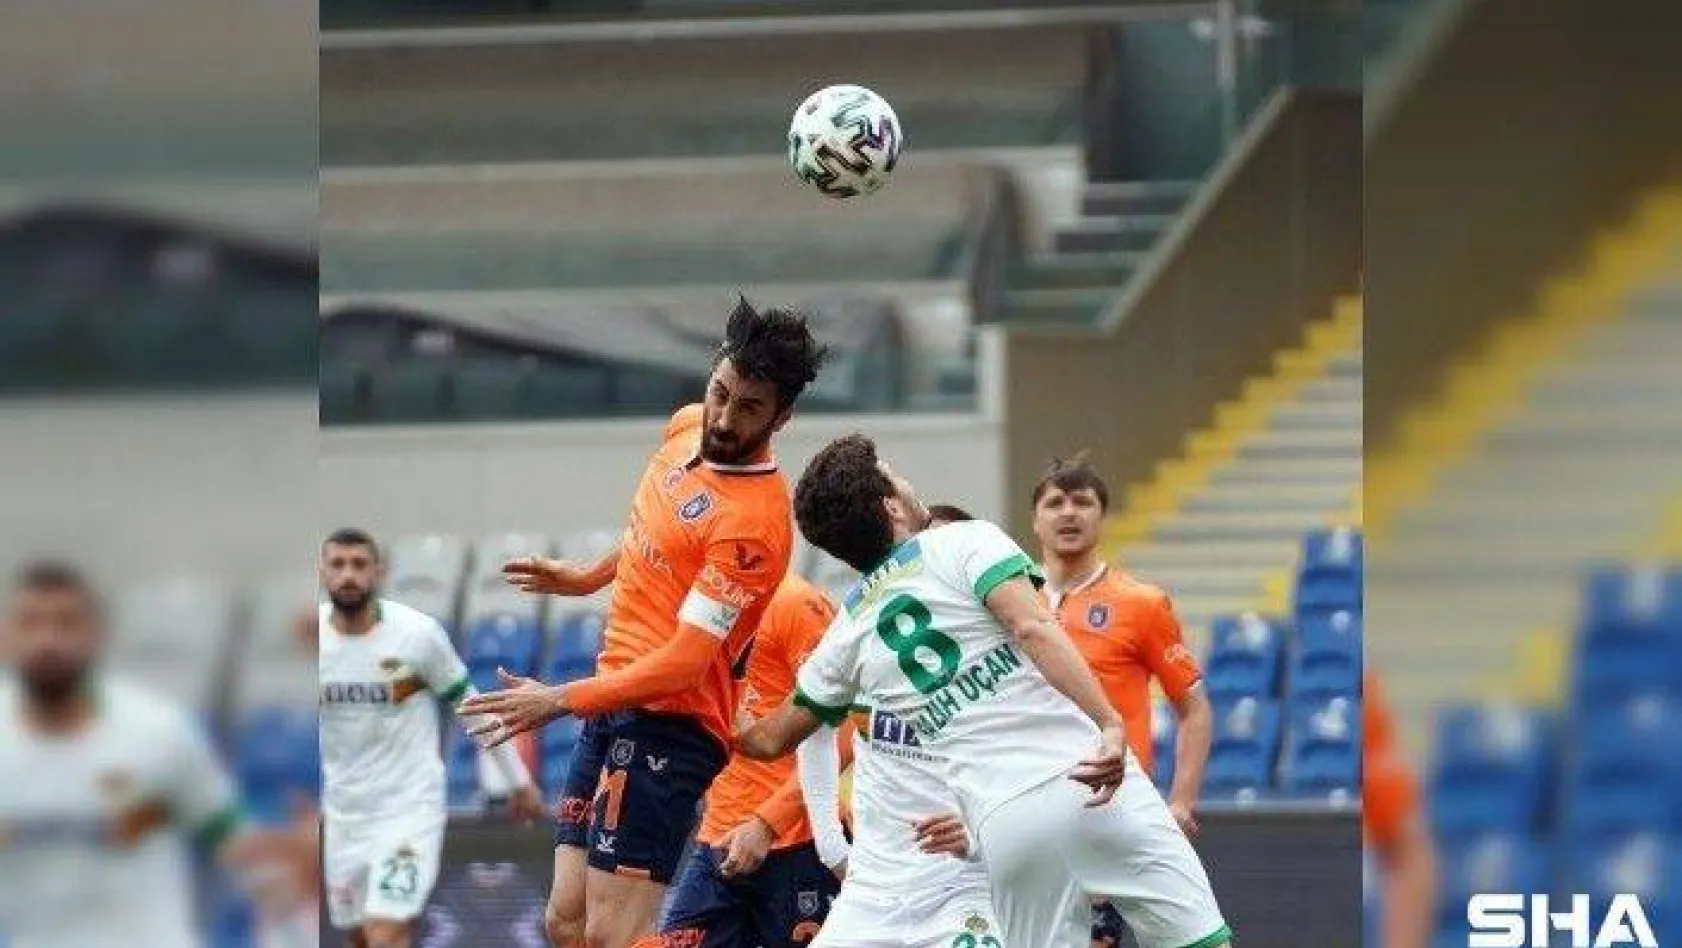 Süper Lig: Medipol Başakşehir: 0 - Aytemiz Alanyaspor: 0 (Maç devam ediyor)